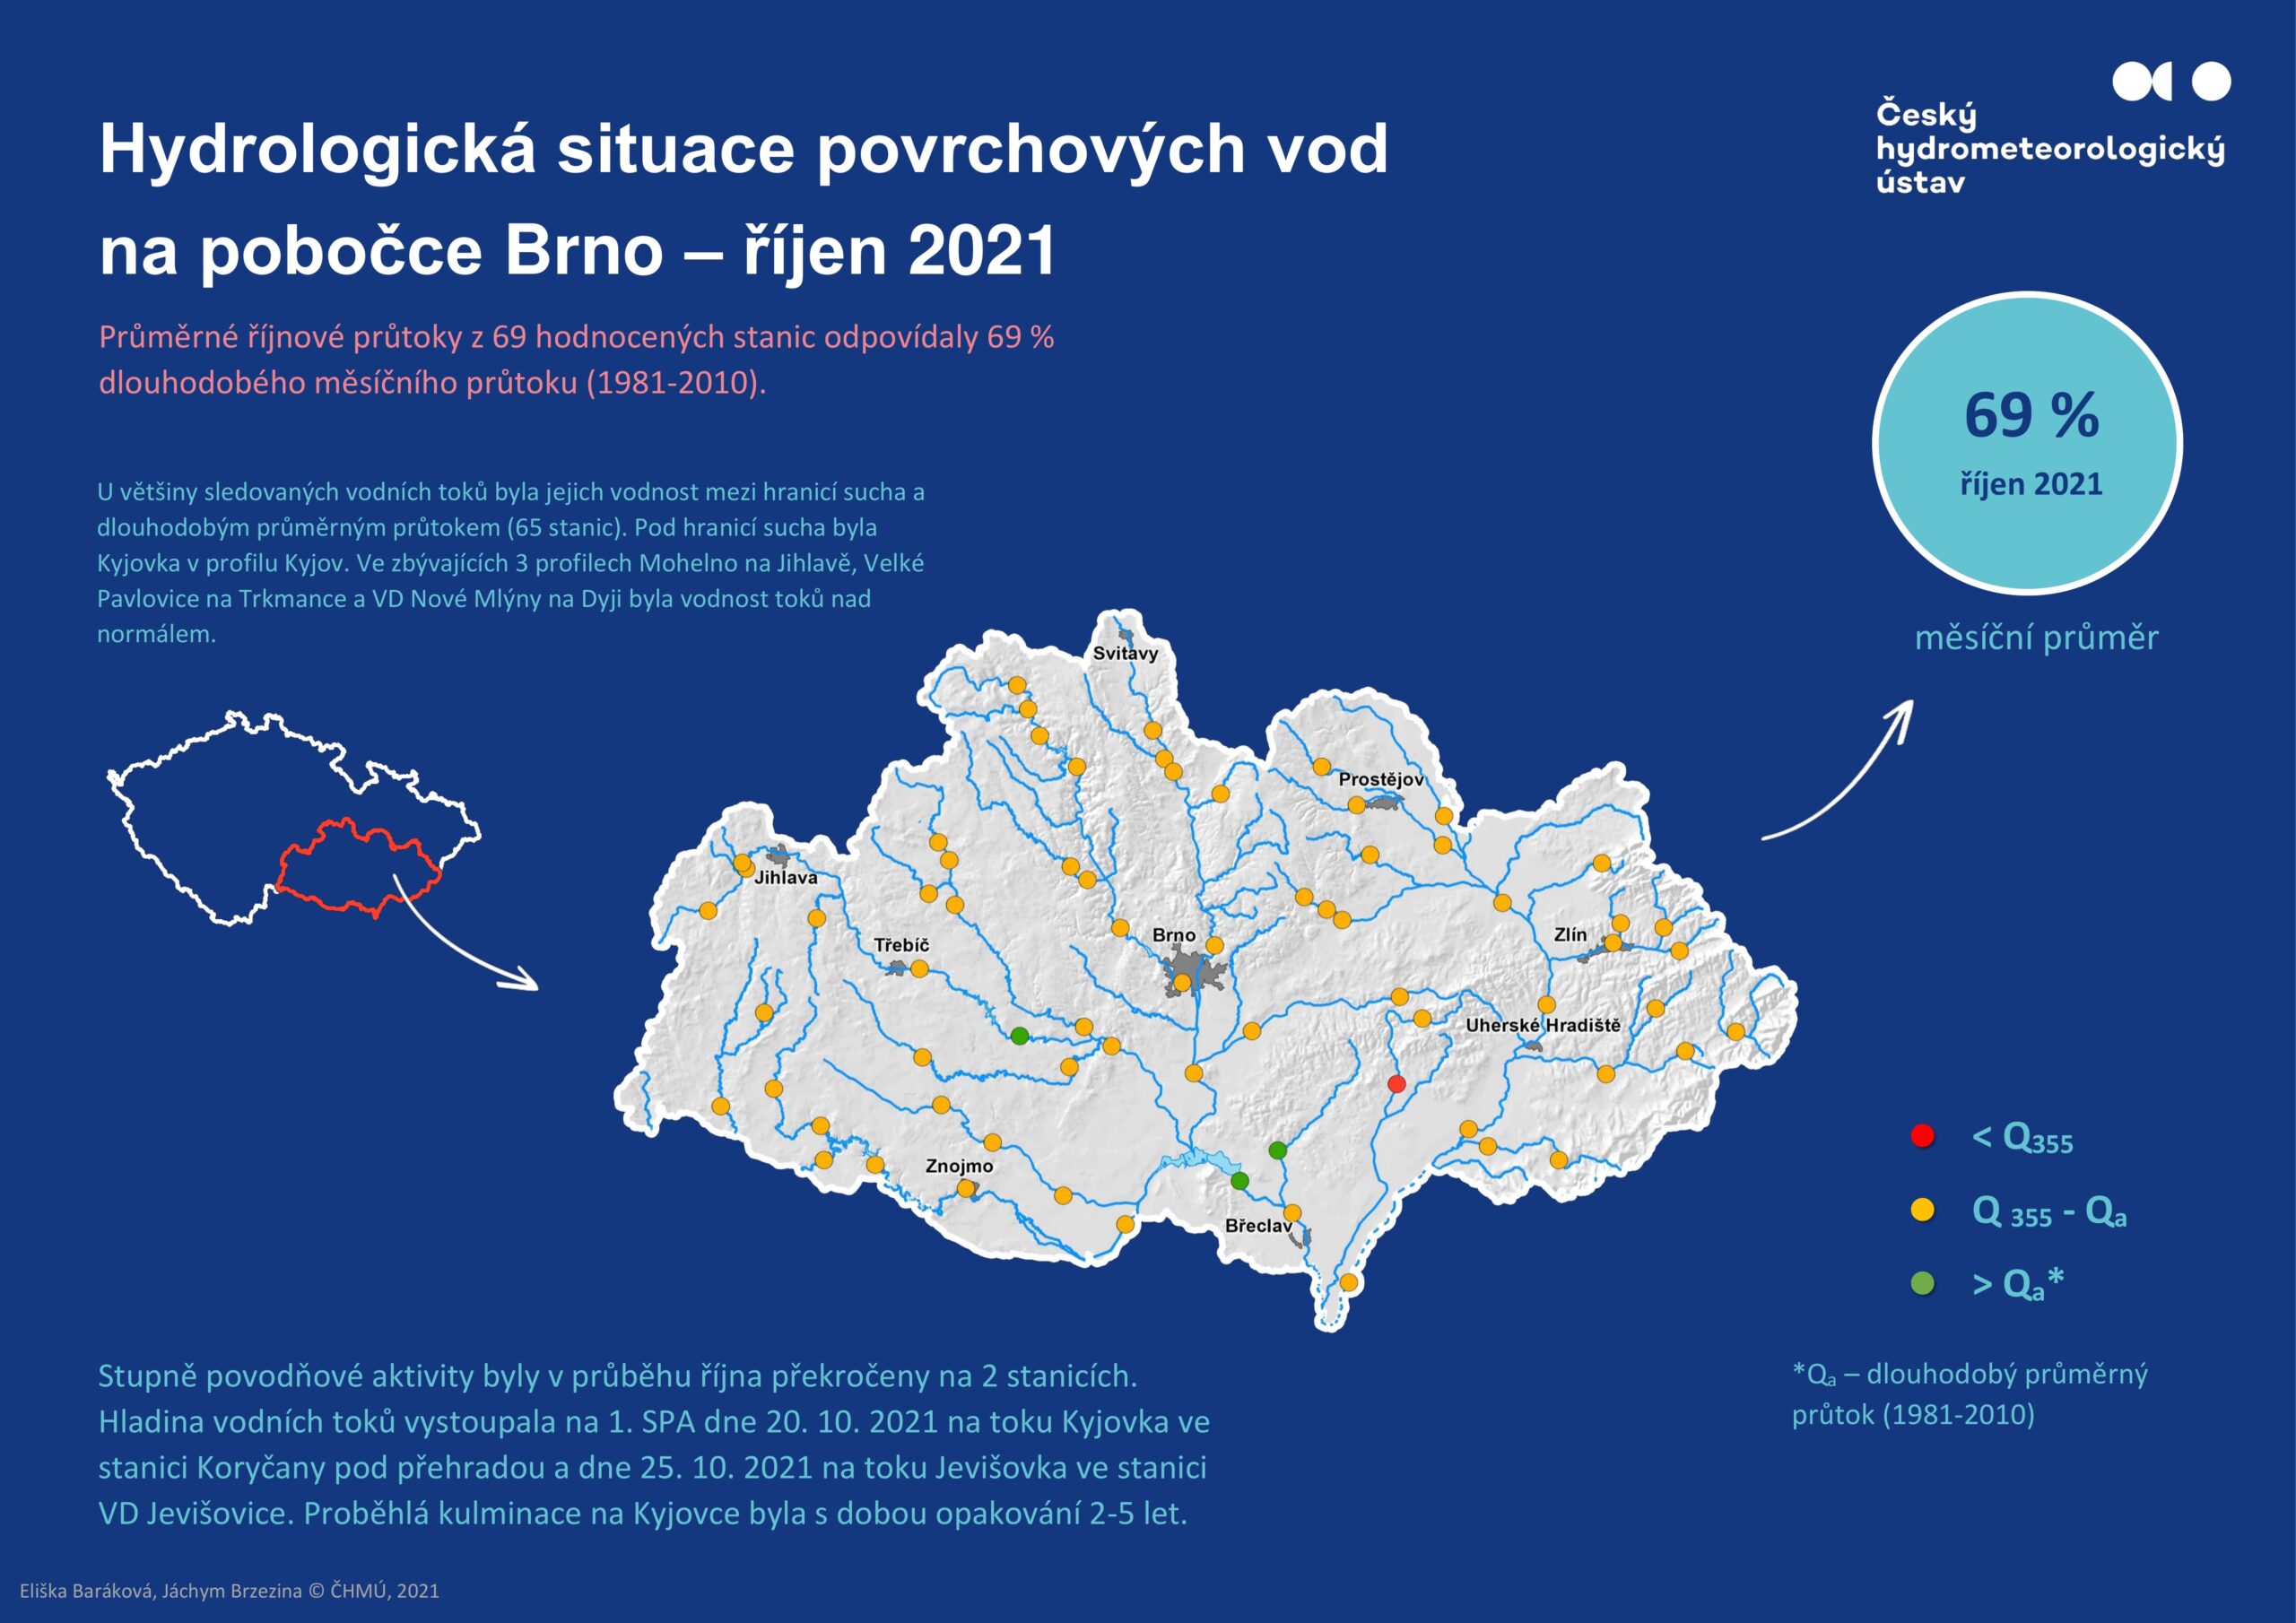 Hydrologická situace povrchových vod na pobočce Brno – říjen 20211 min čtení